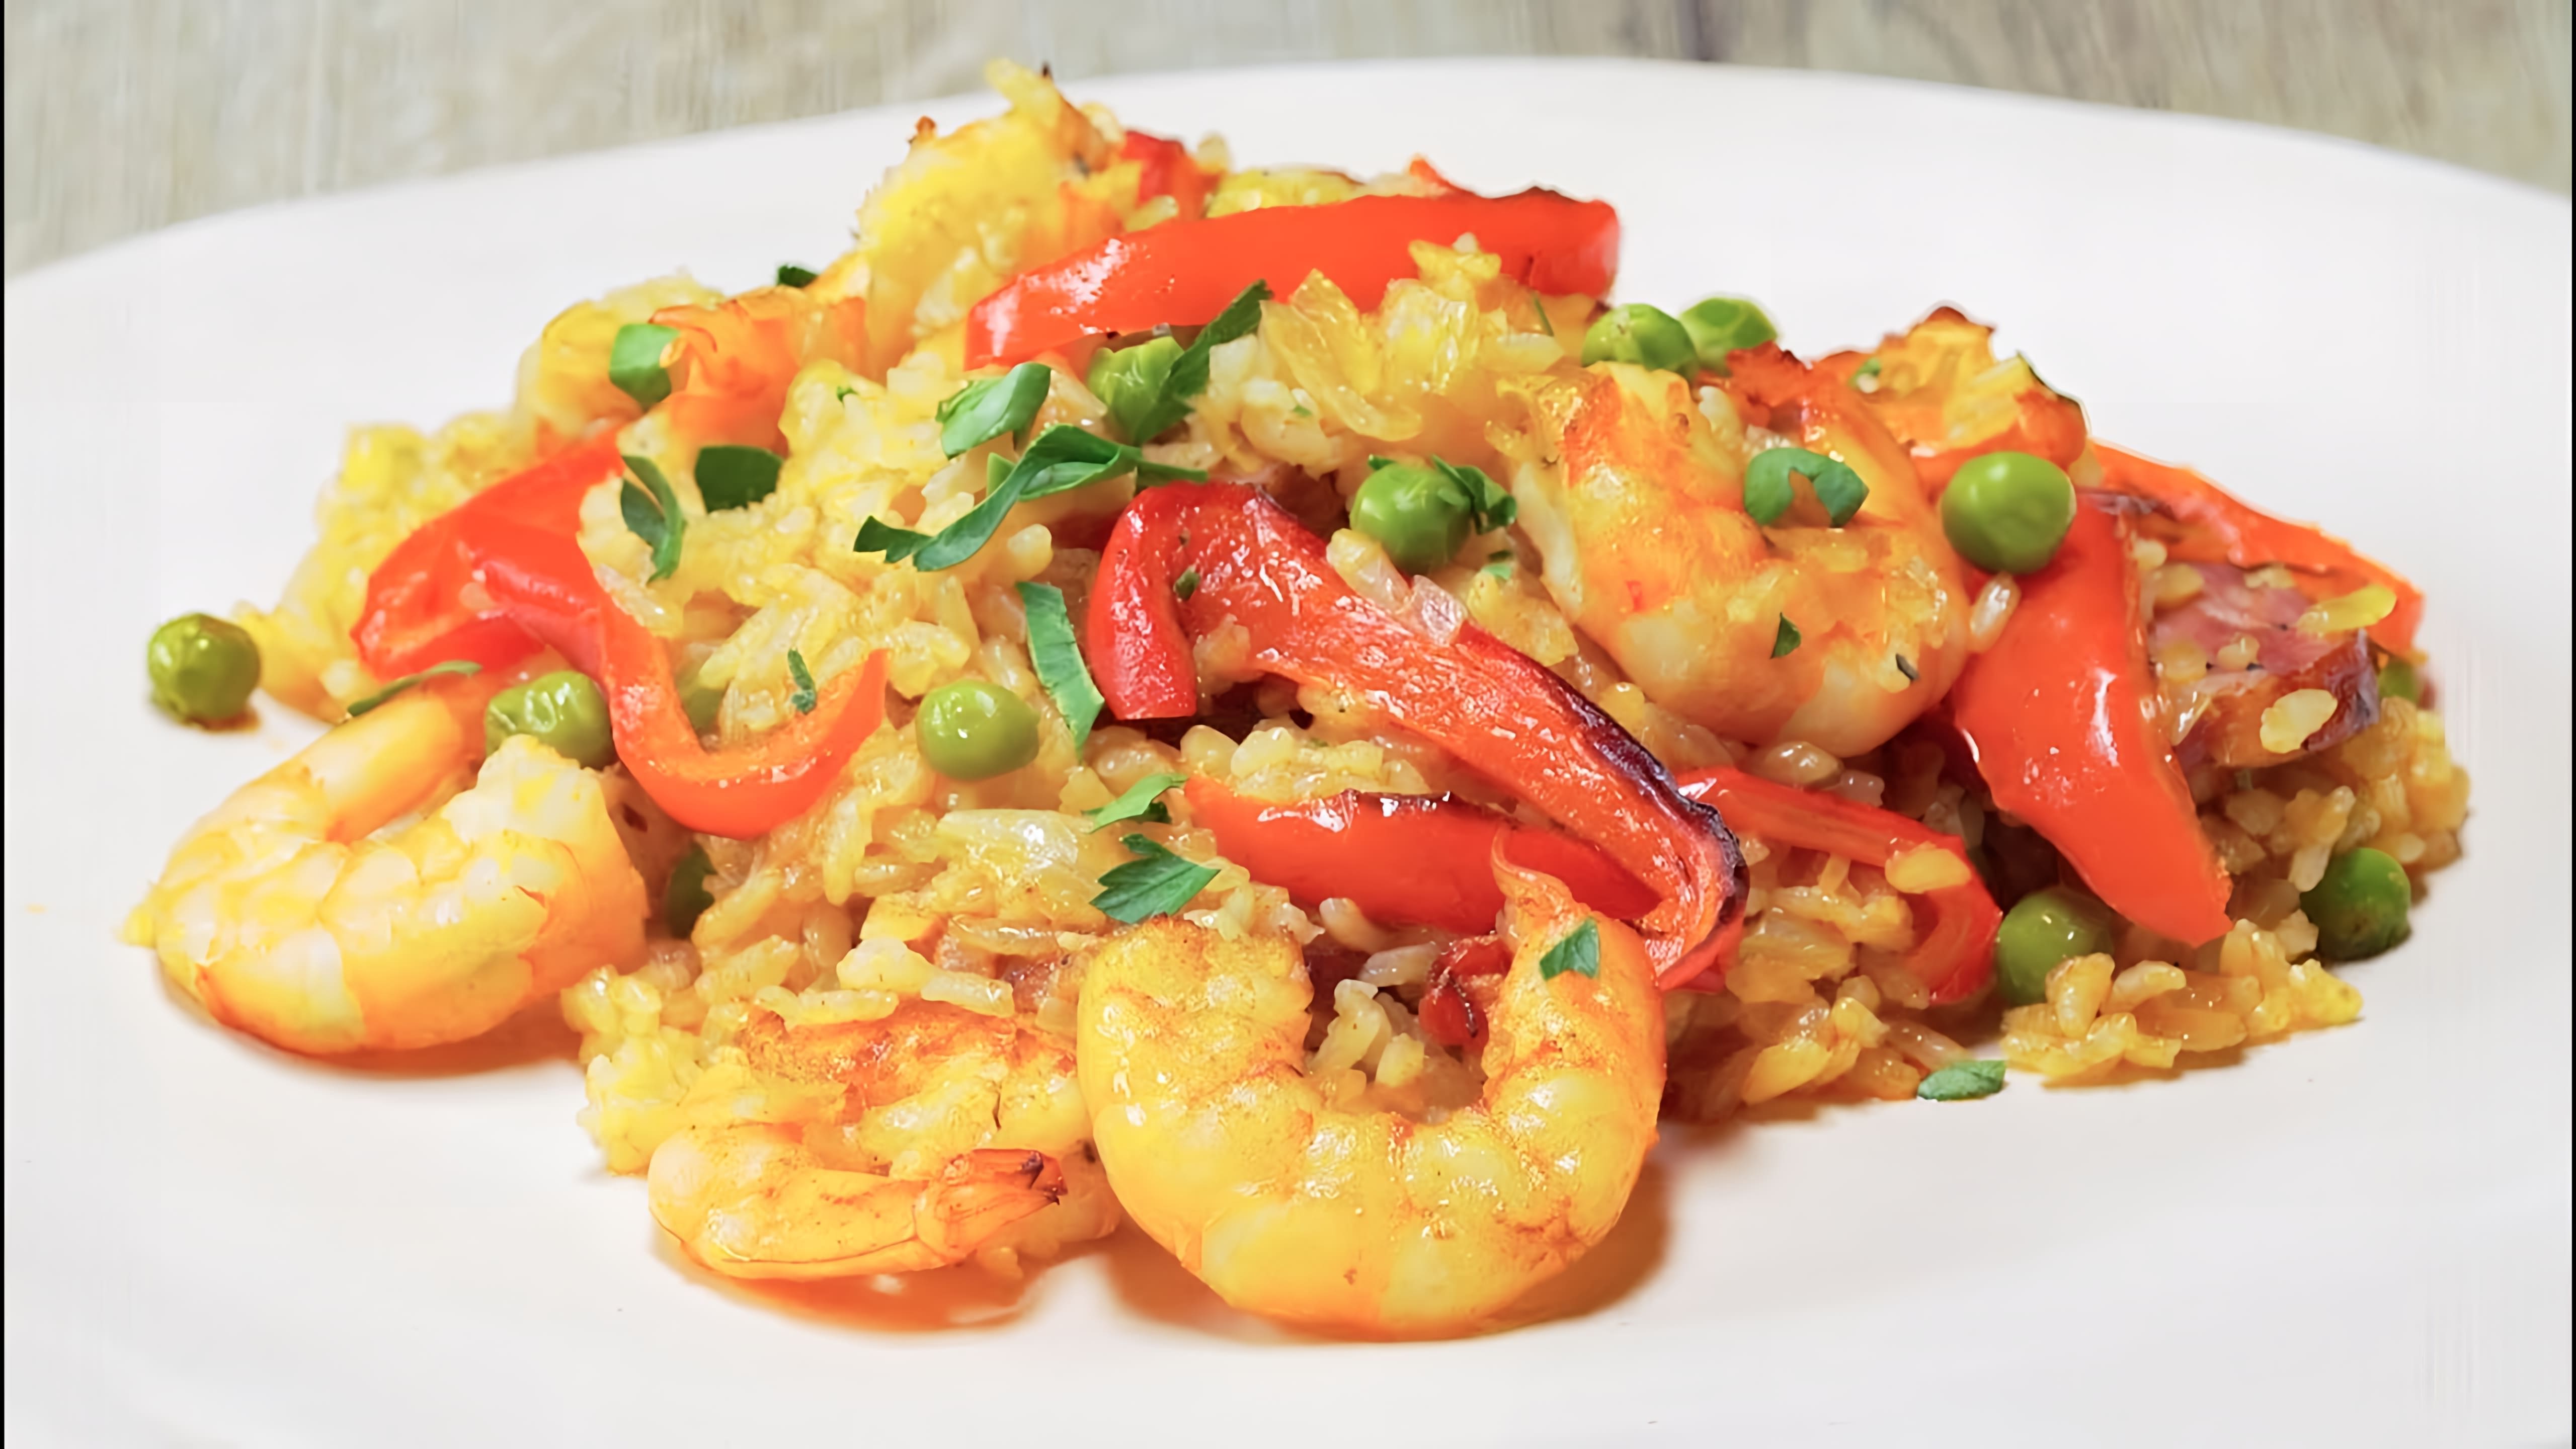 Паэлья - это традиционное блюдо испанской кухни, которое готовится из риса, морепродуктов и овощей